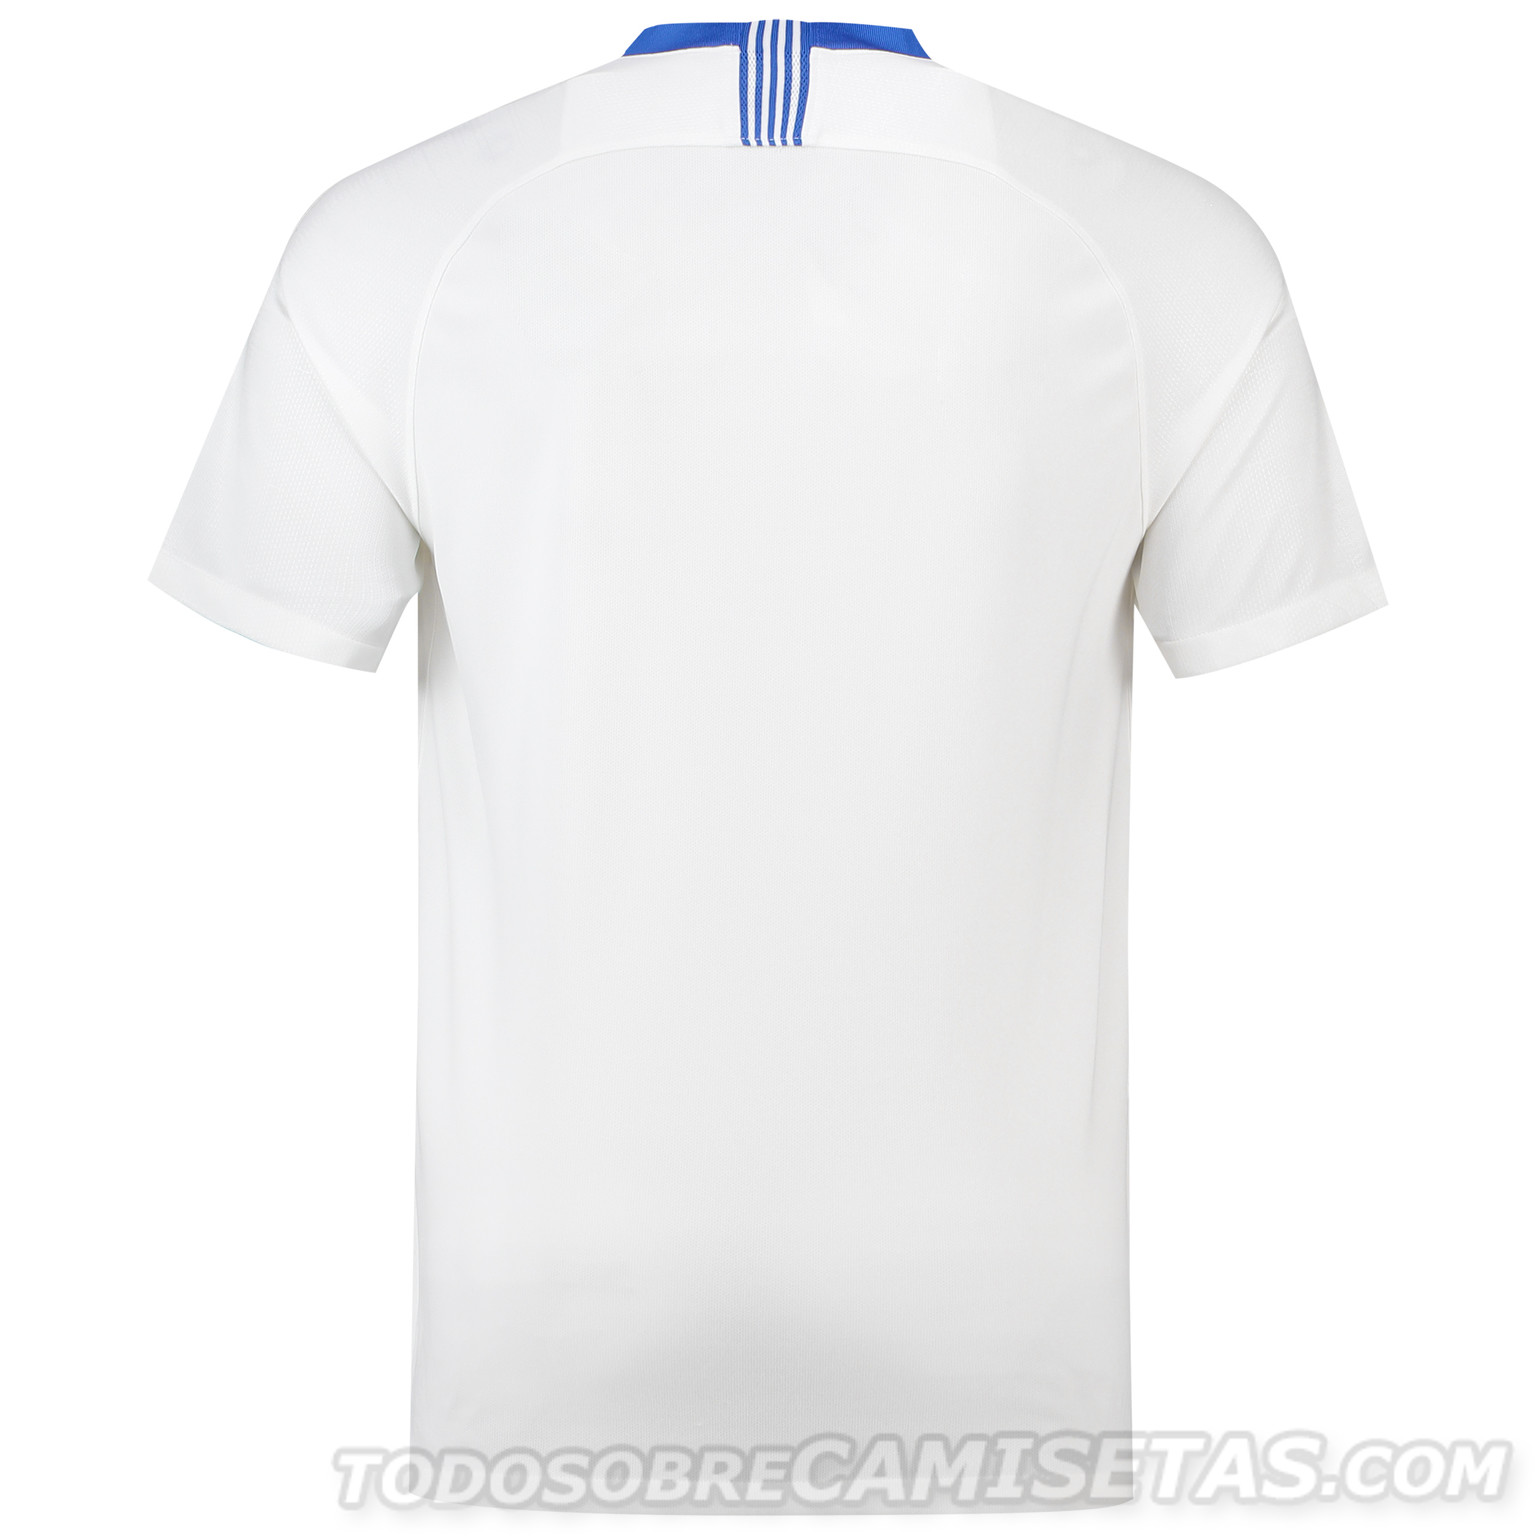 Greece 2018 Nike Kits